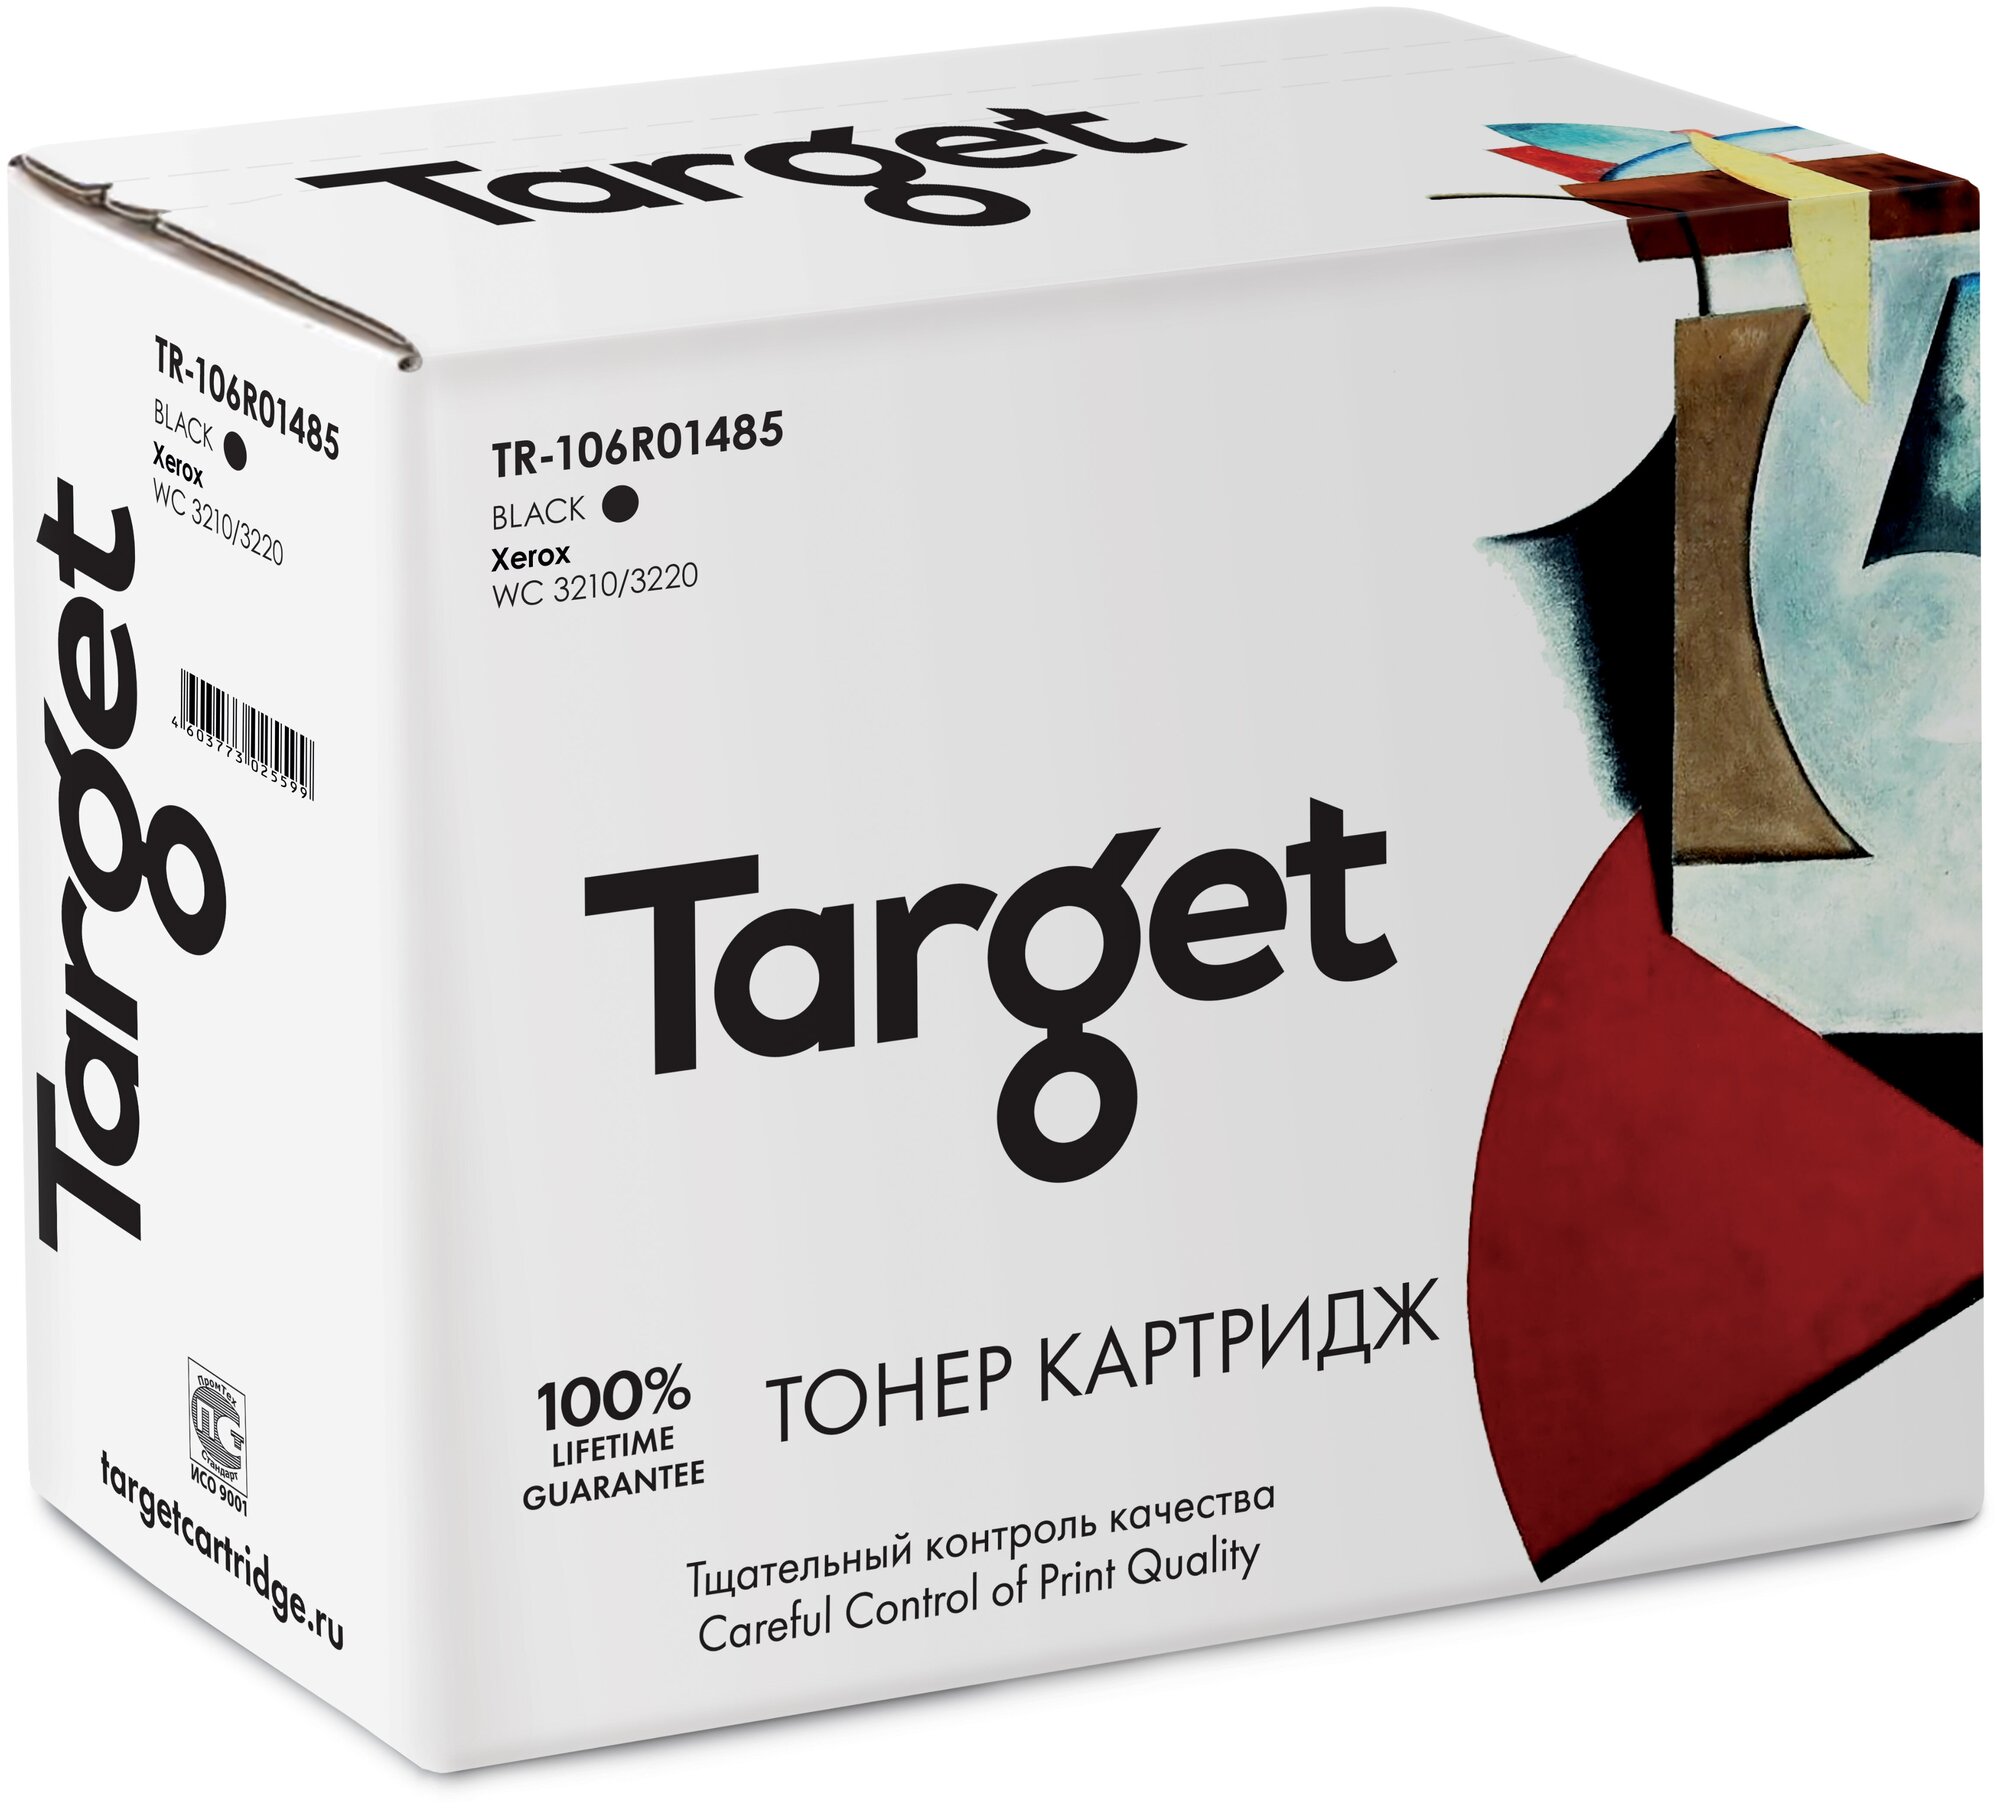 Тонер-картридж Target 106R01485, черный, для лазерного принтера, совместимый